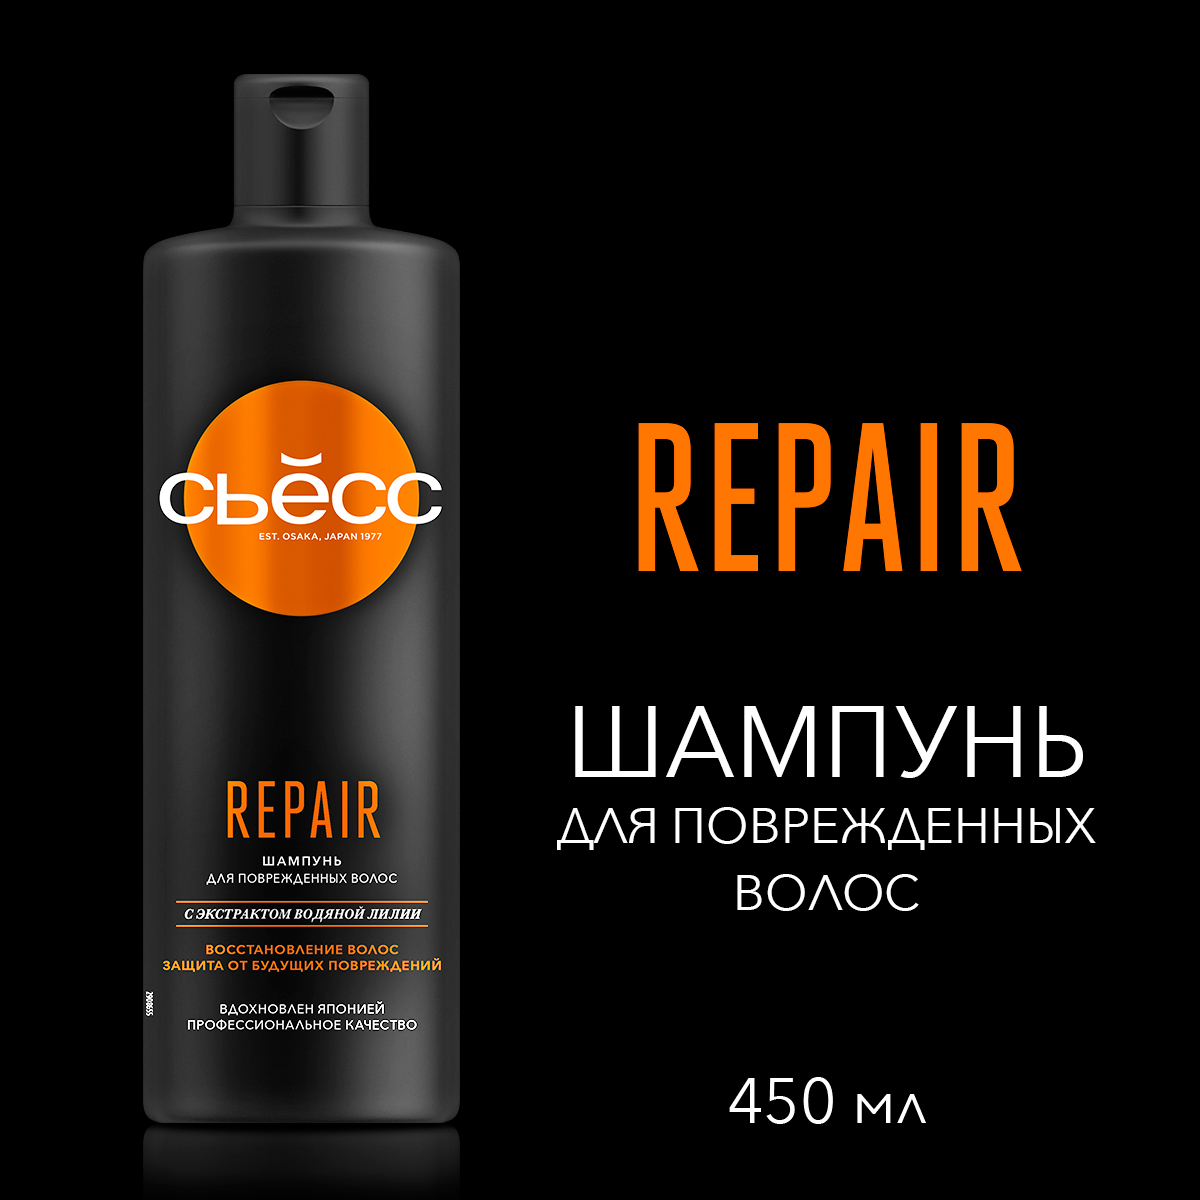 Шампунь СЬЕСС Repair для поврежденных волос, легкое расчесывание и интенсивный уход, 450мл шампунь tresemme repair